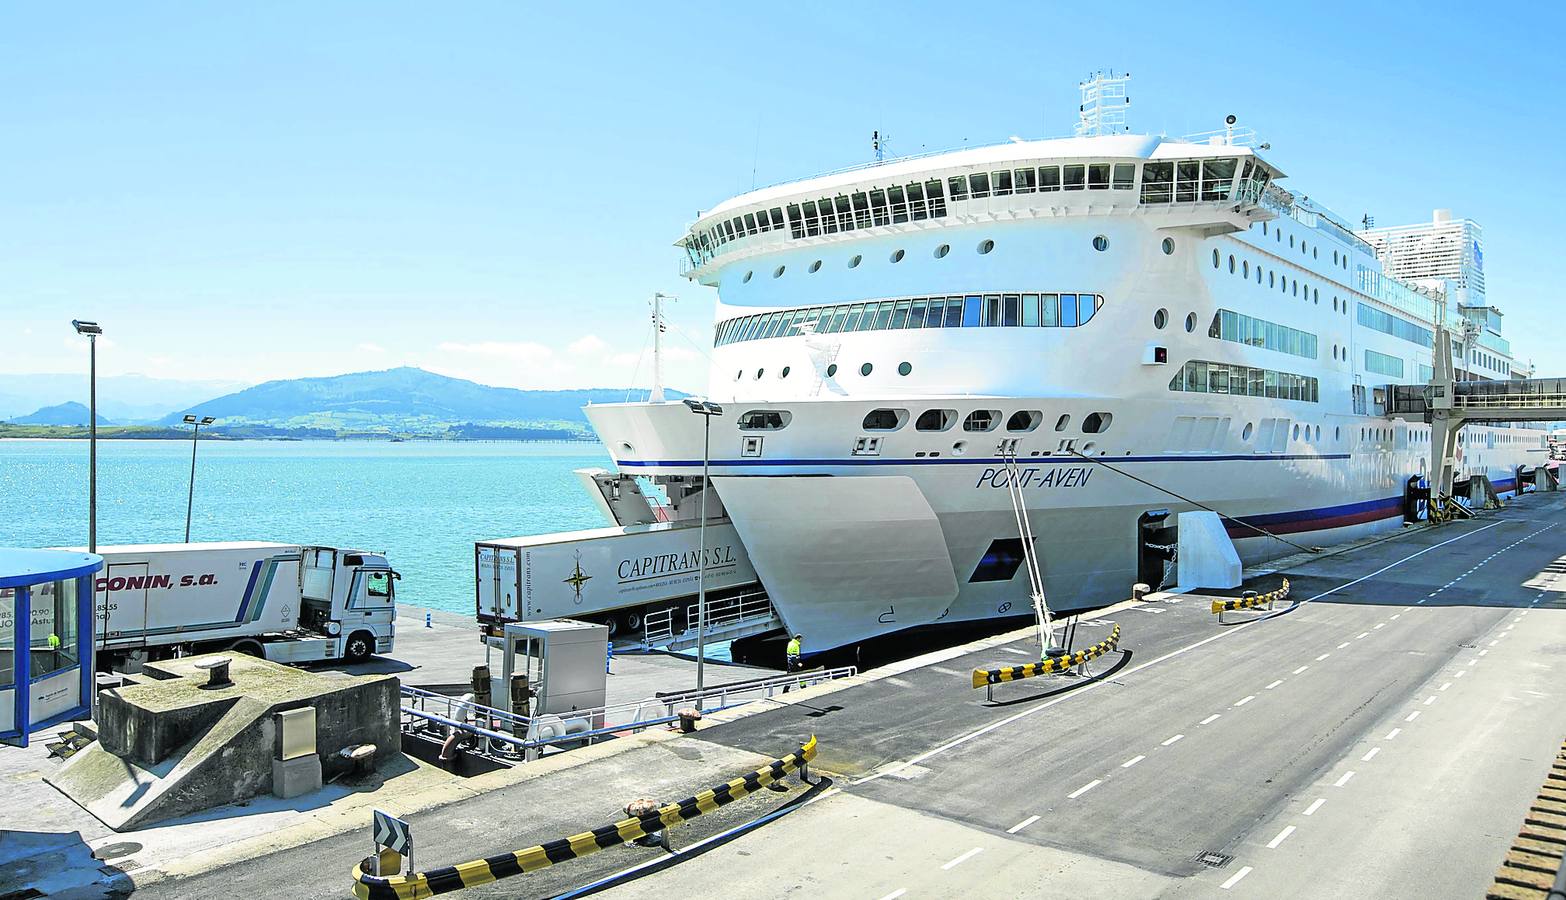 El ferry es la principal vía de comunicación de cantabria con Gran Bretaña y transportó 270.000 pasajeros el año pasado.